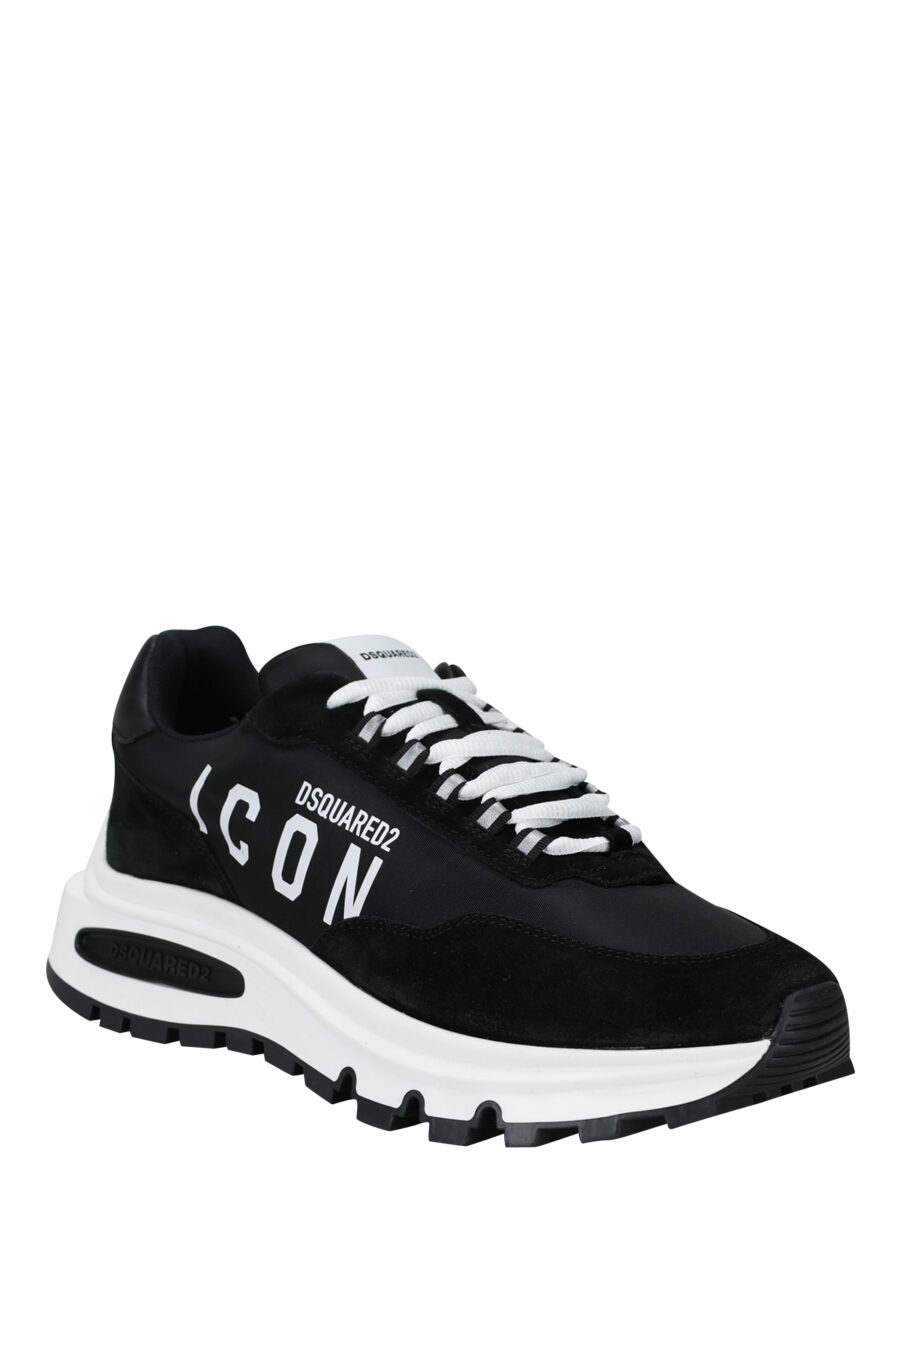 Sapatos pretos com mini-logotipo "icon" e sola branca com tubo interior - 8055777249321 1